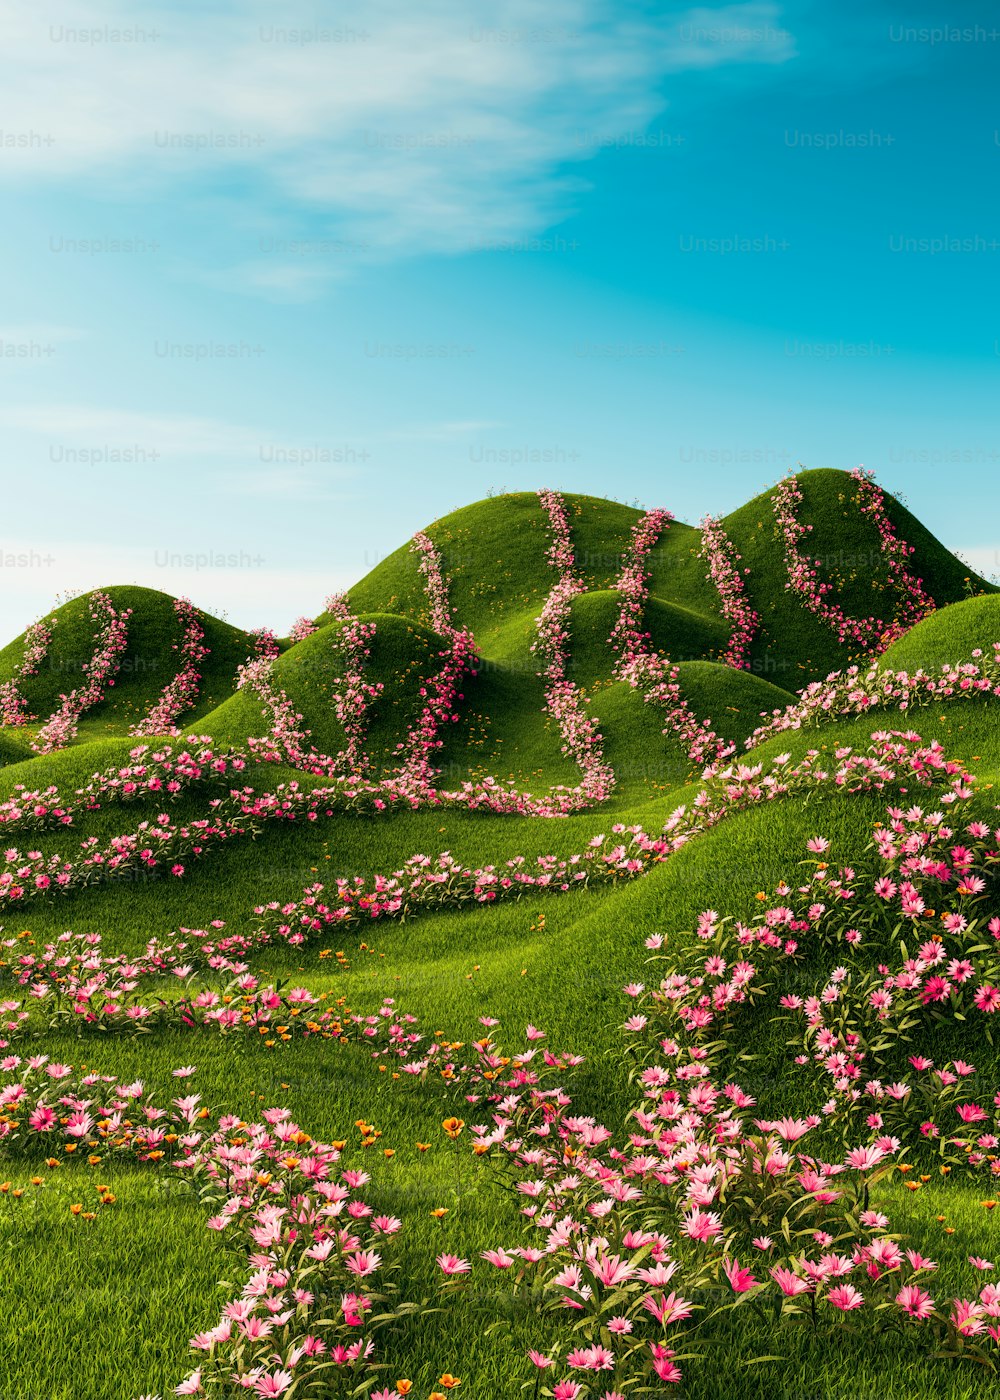 분홍색 꽃으로 뒤덮인 언덕, 풀밭에 사랑이라는 글자가 새겨져 있습니다